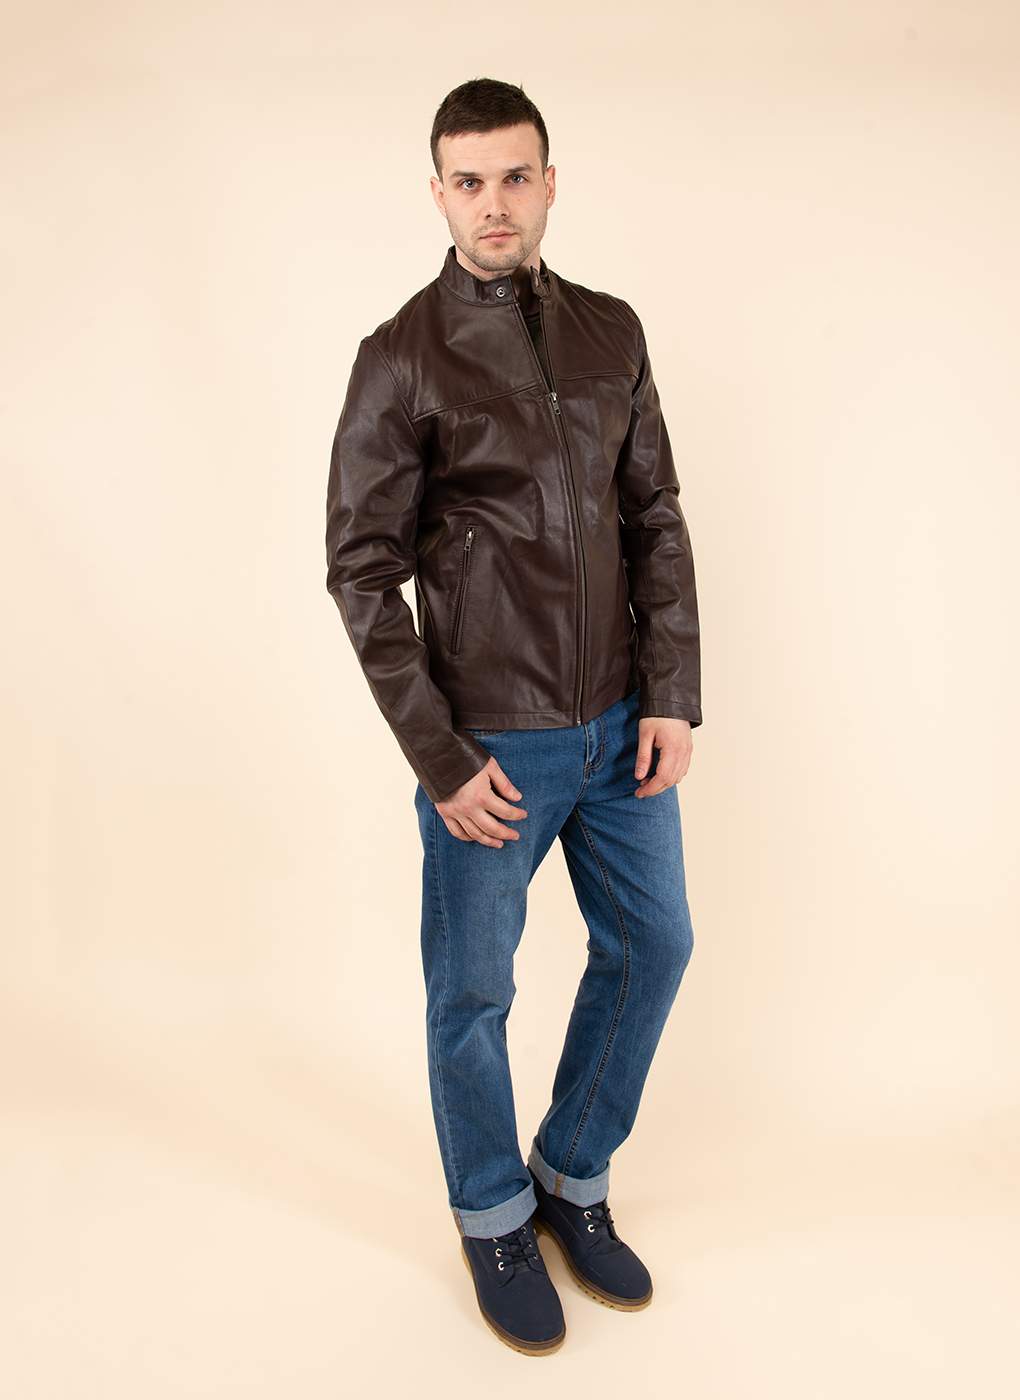 Кожаная куртка мужская Каляев 158984 коричневая 52